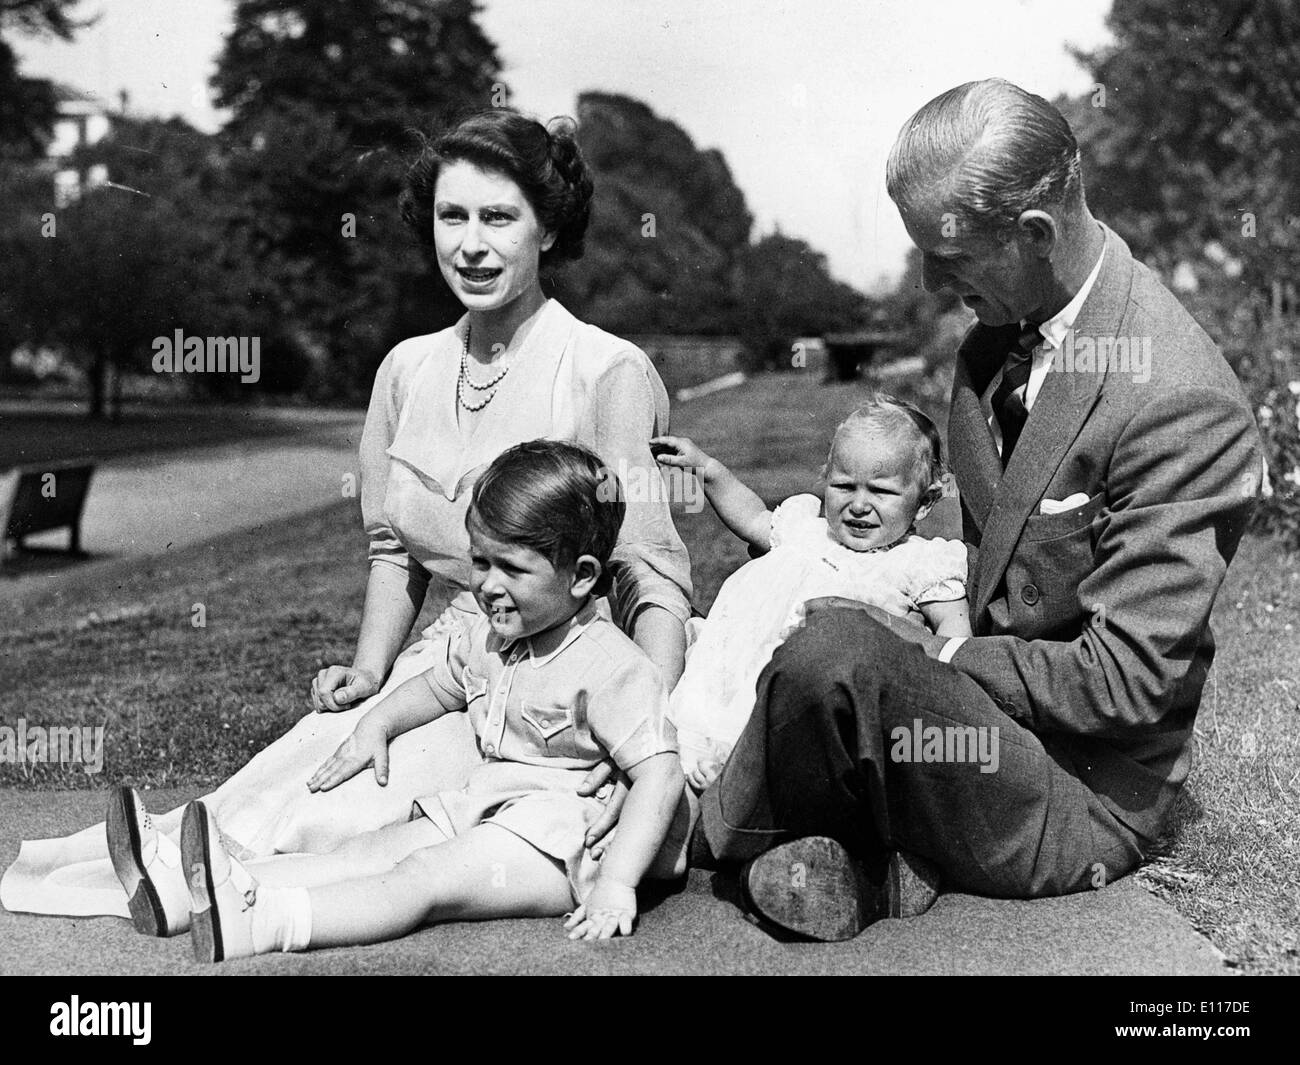 queen-elizabeth-ii-and-prince-philip-with-children-E117DE.jpg